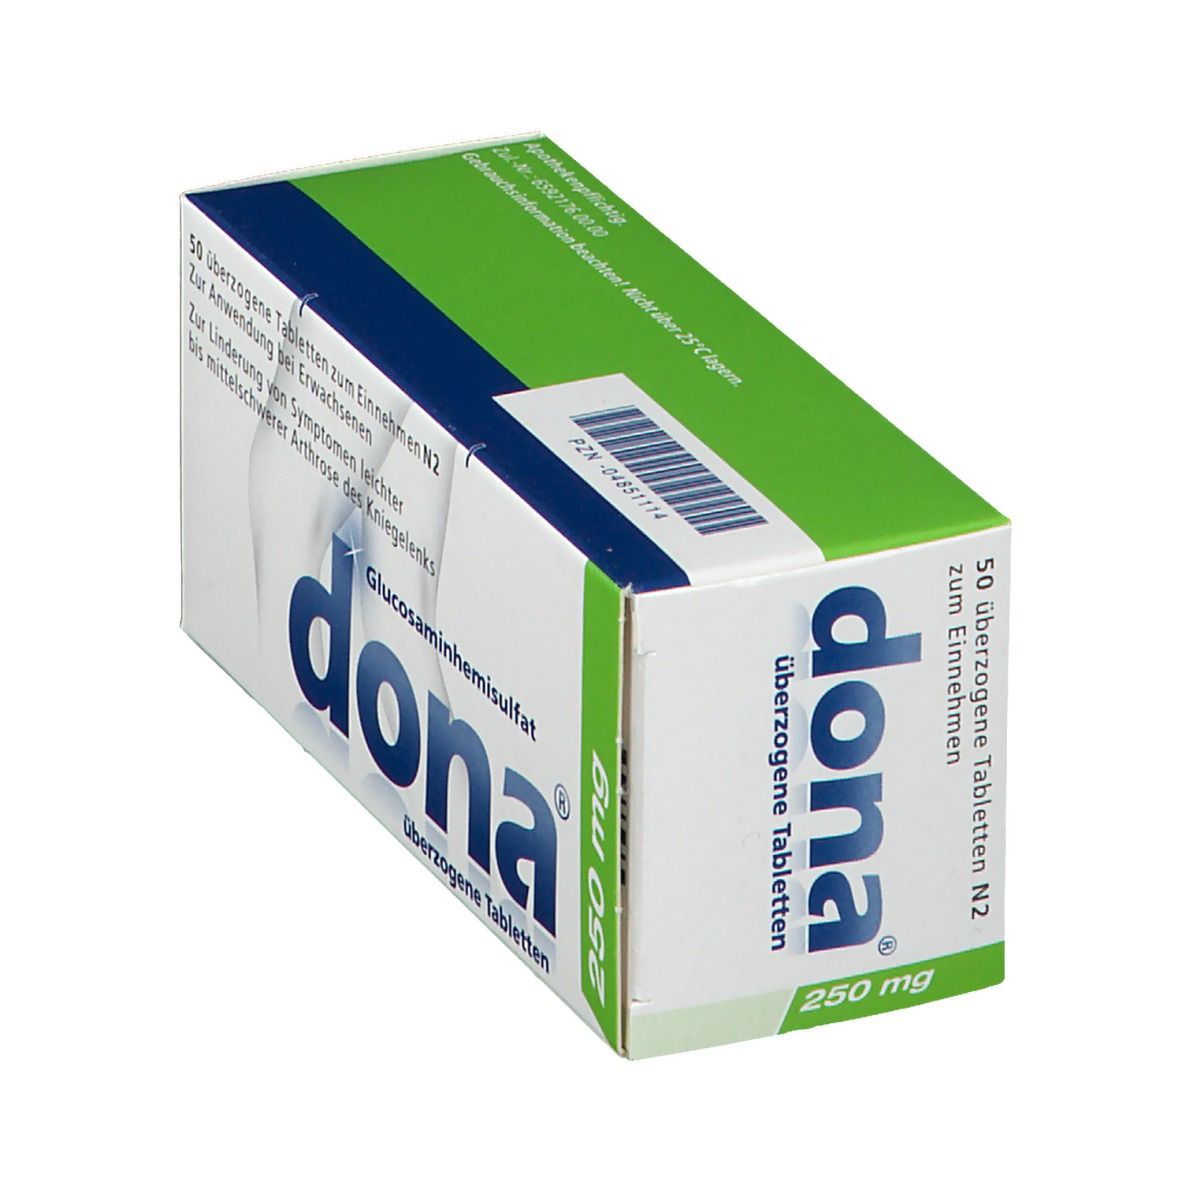 Dona 250 | Produkte günstig kaufen auf shop-apotheke.com